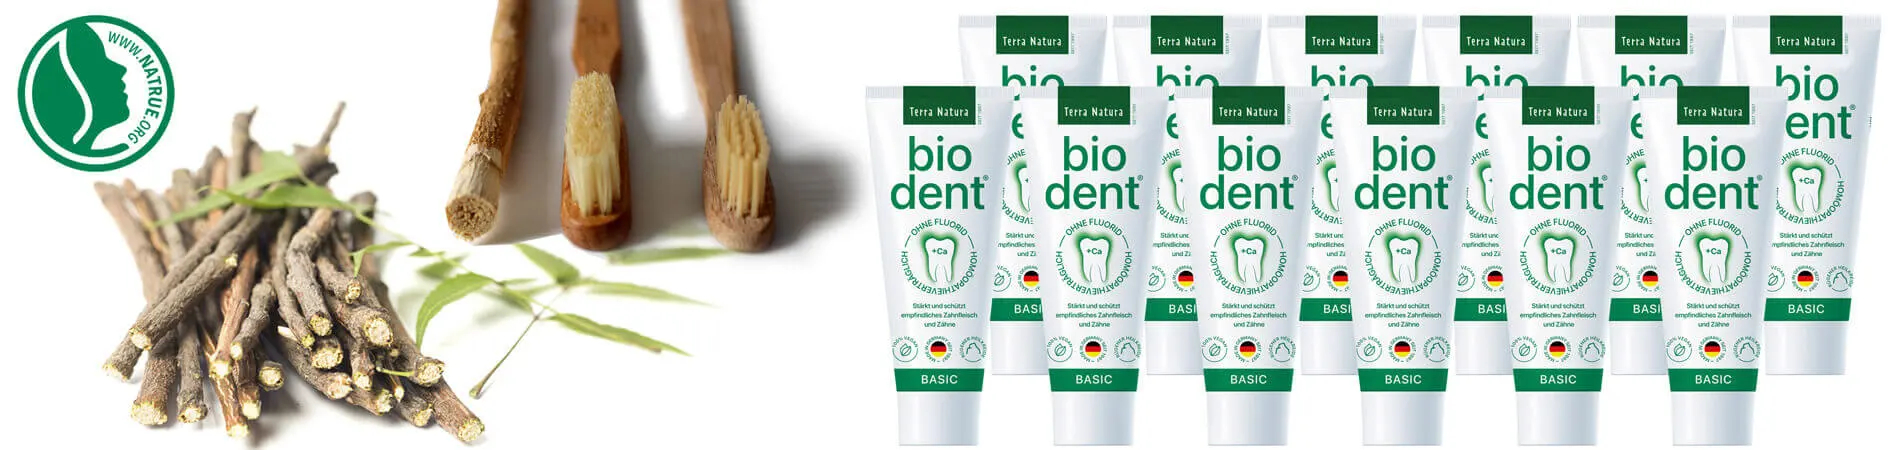 Biodent Basic Dentifrici senza fluoro acquistare Bio dent...